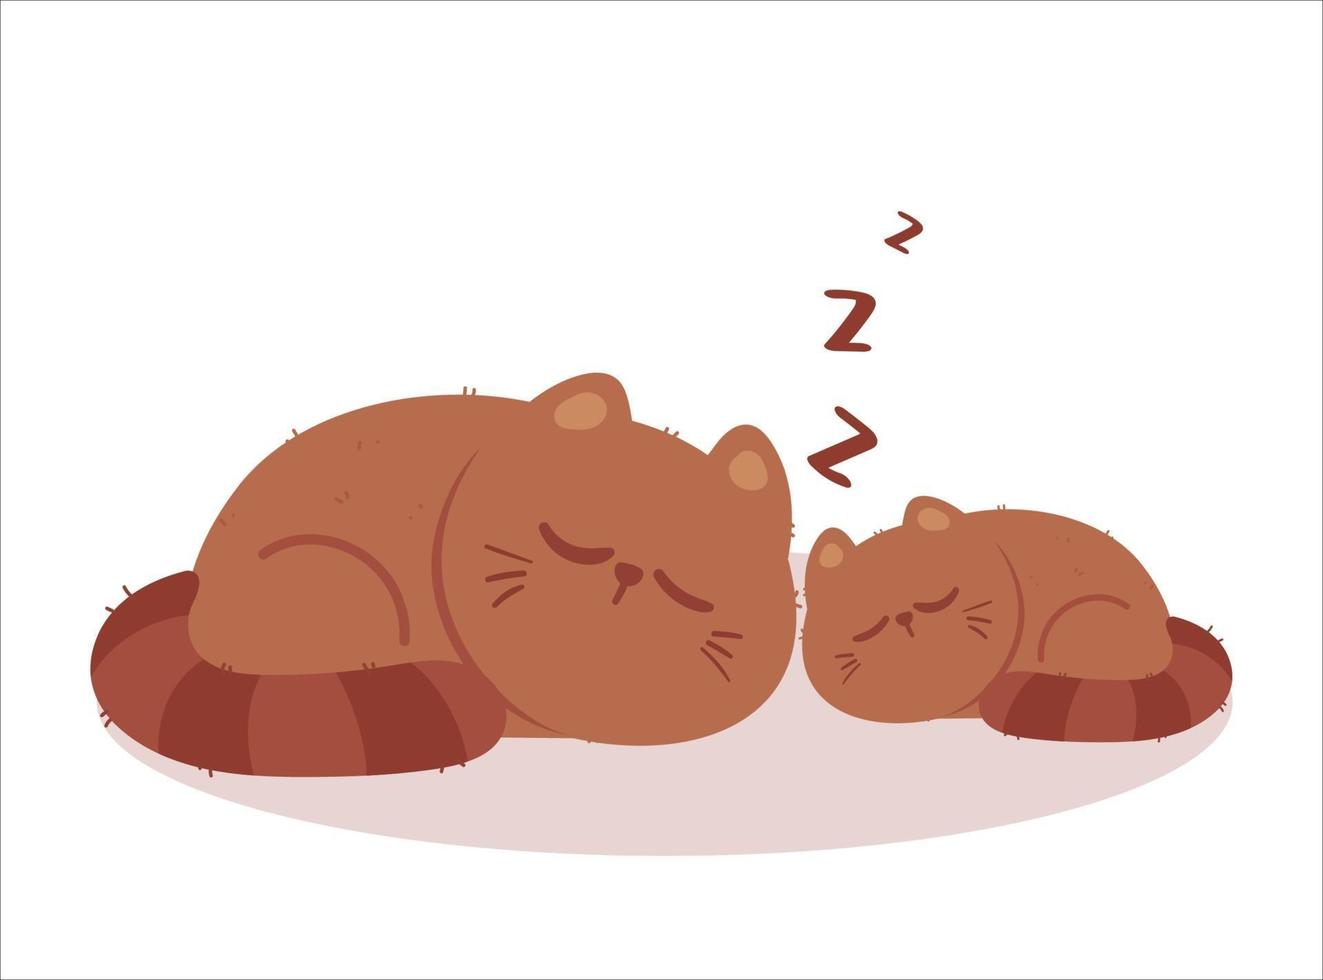 Cute cat sleeping cartoon art illustration vector